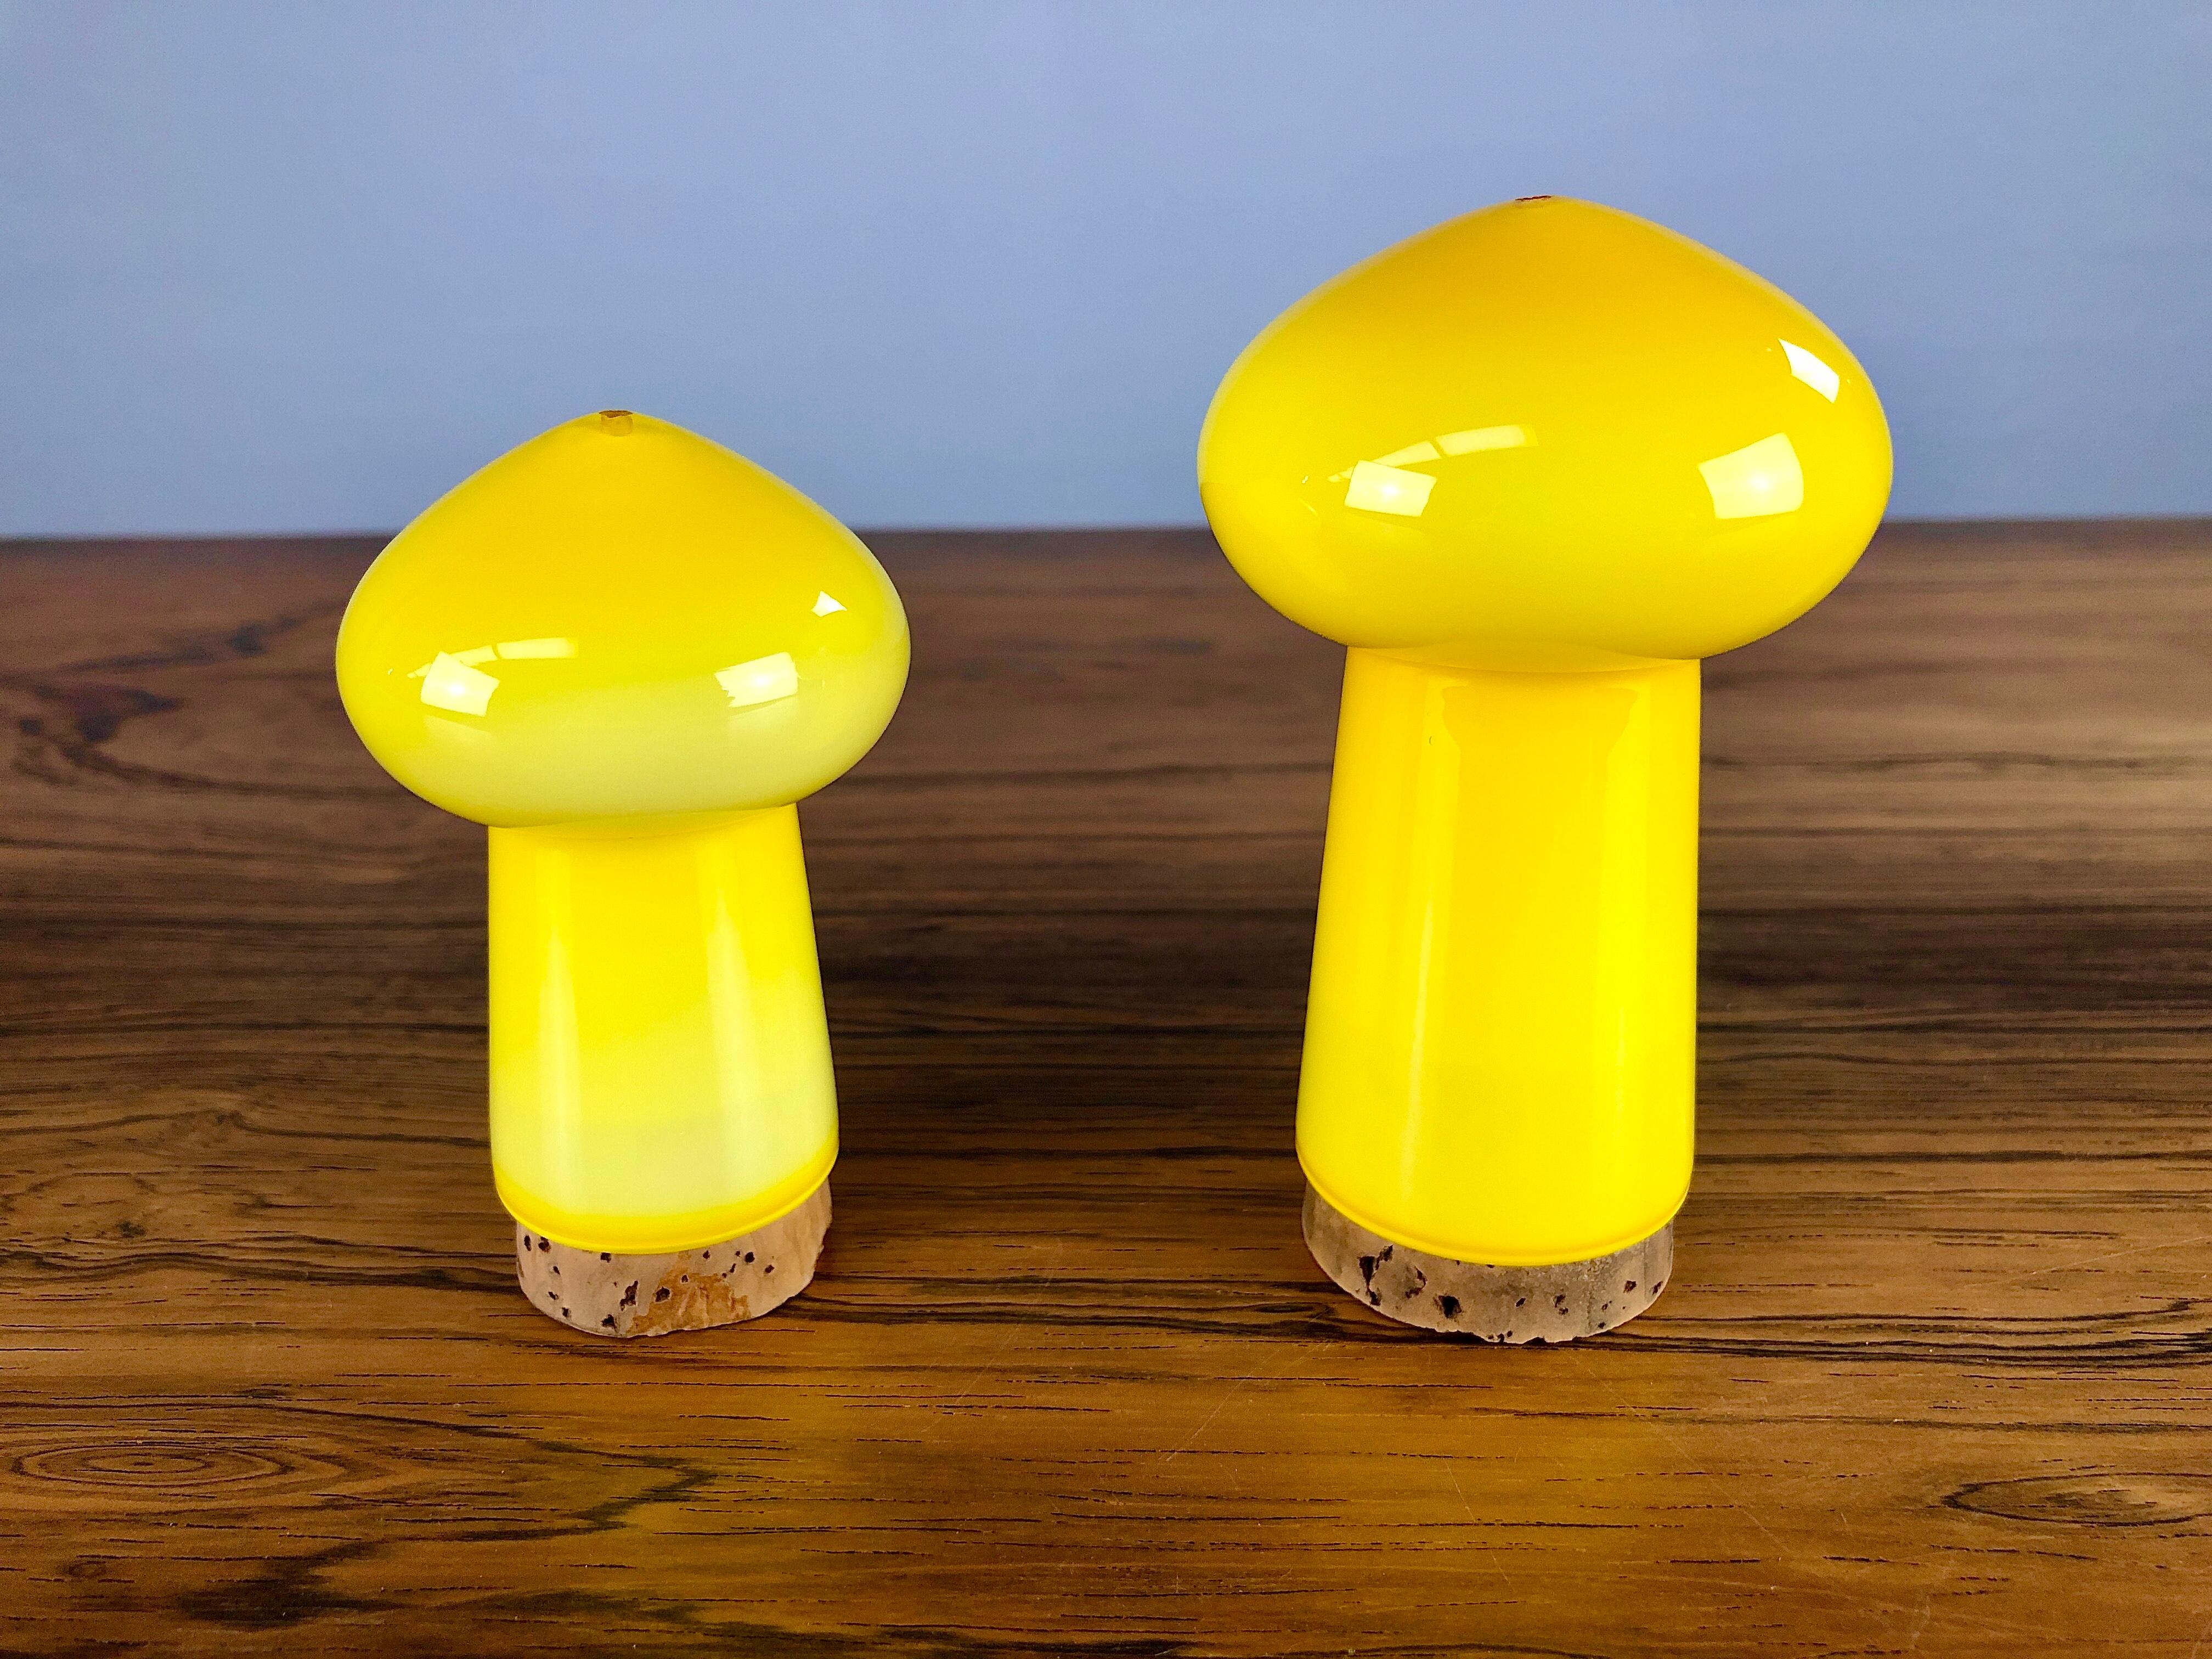 Ensemble de salières et poivrières danoises jaunes en verre, conçues par Michael Bang et produites par Holmegaard dans les années 1970.

L'ensemble en forme de champignon soufflé à la main en verre opale soufflé à la main avec ses couleurs des